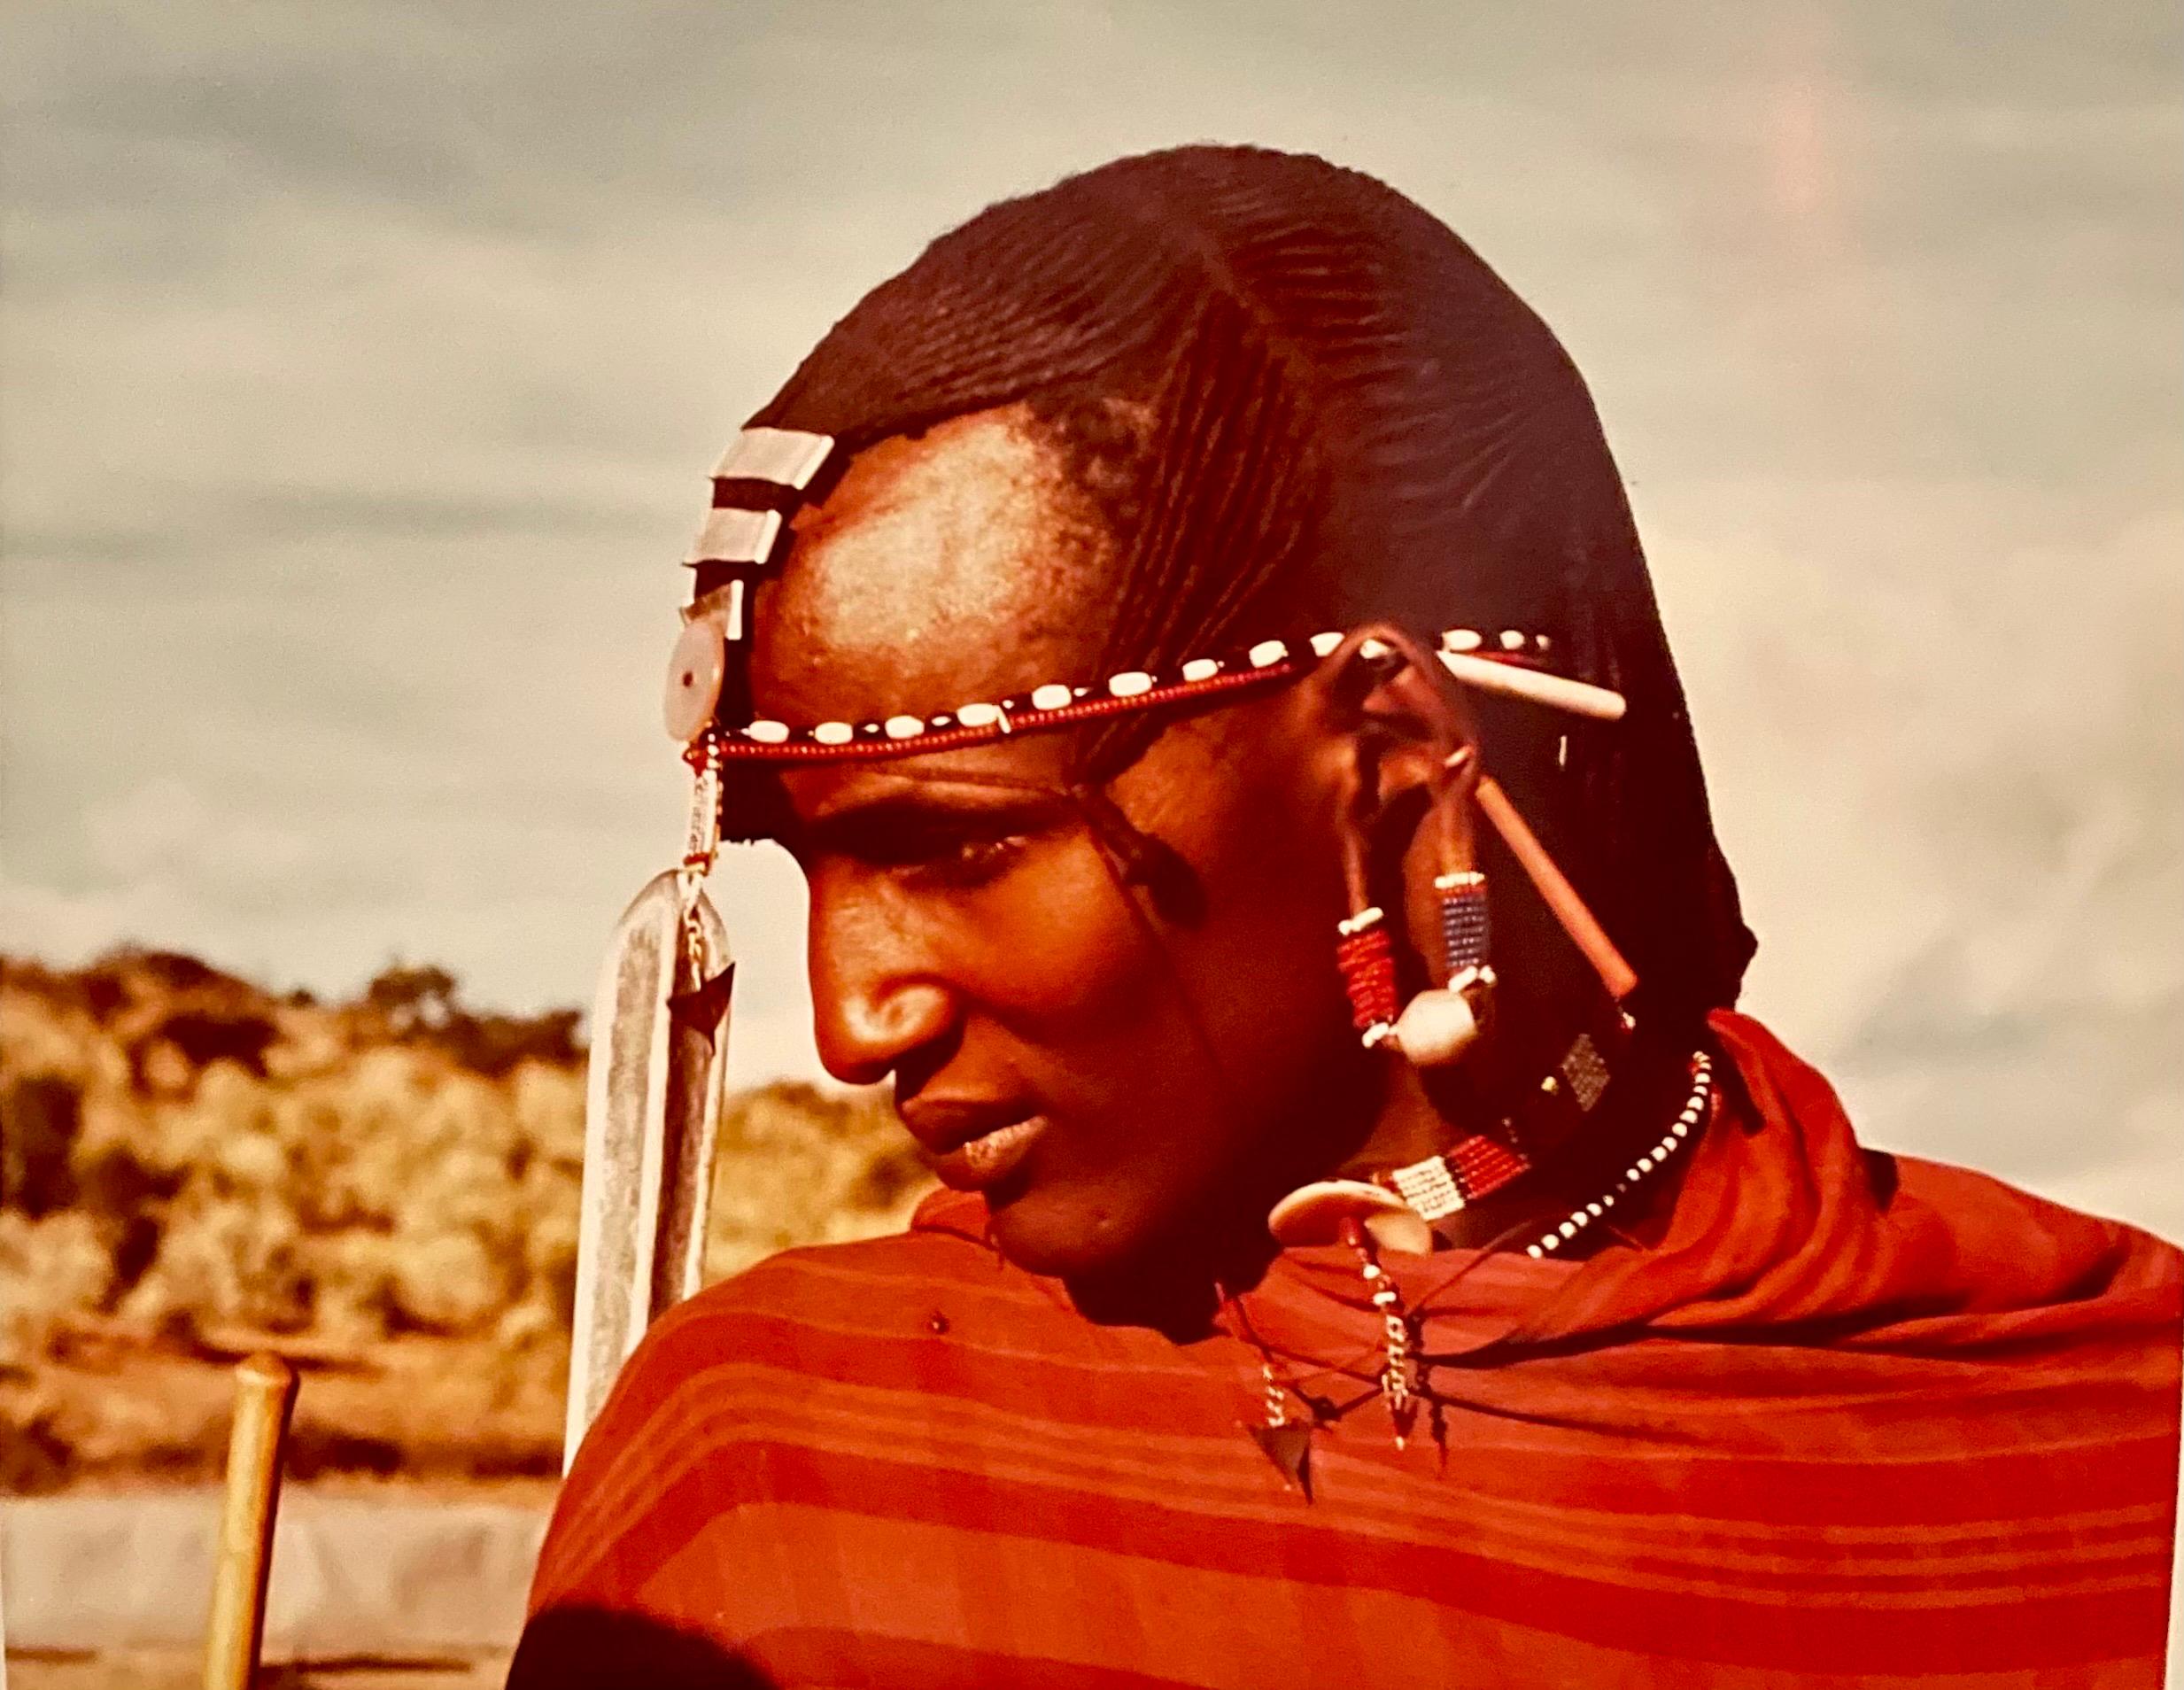 Carol Beckwith Portrait Photograph – Seltene Vintage-Farb-C-Druck-Fotografie eines Maasai-Kriegers, Chromogenic 